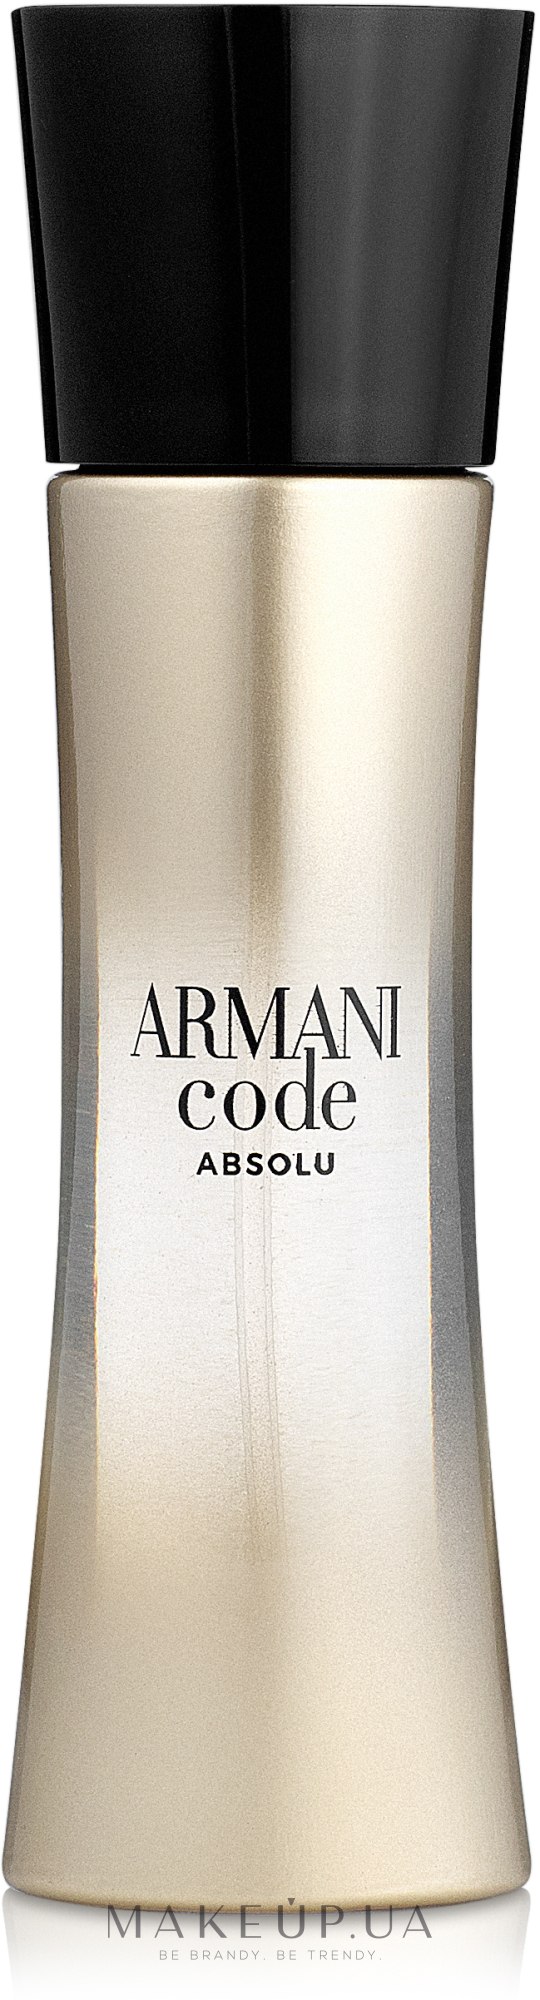 Giorgio Armani Code Absolu - Парфюмированная вода: купить по лучшей цене в  Украине | Makeup.ua